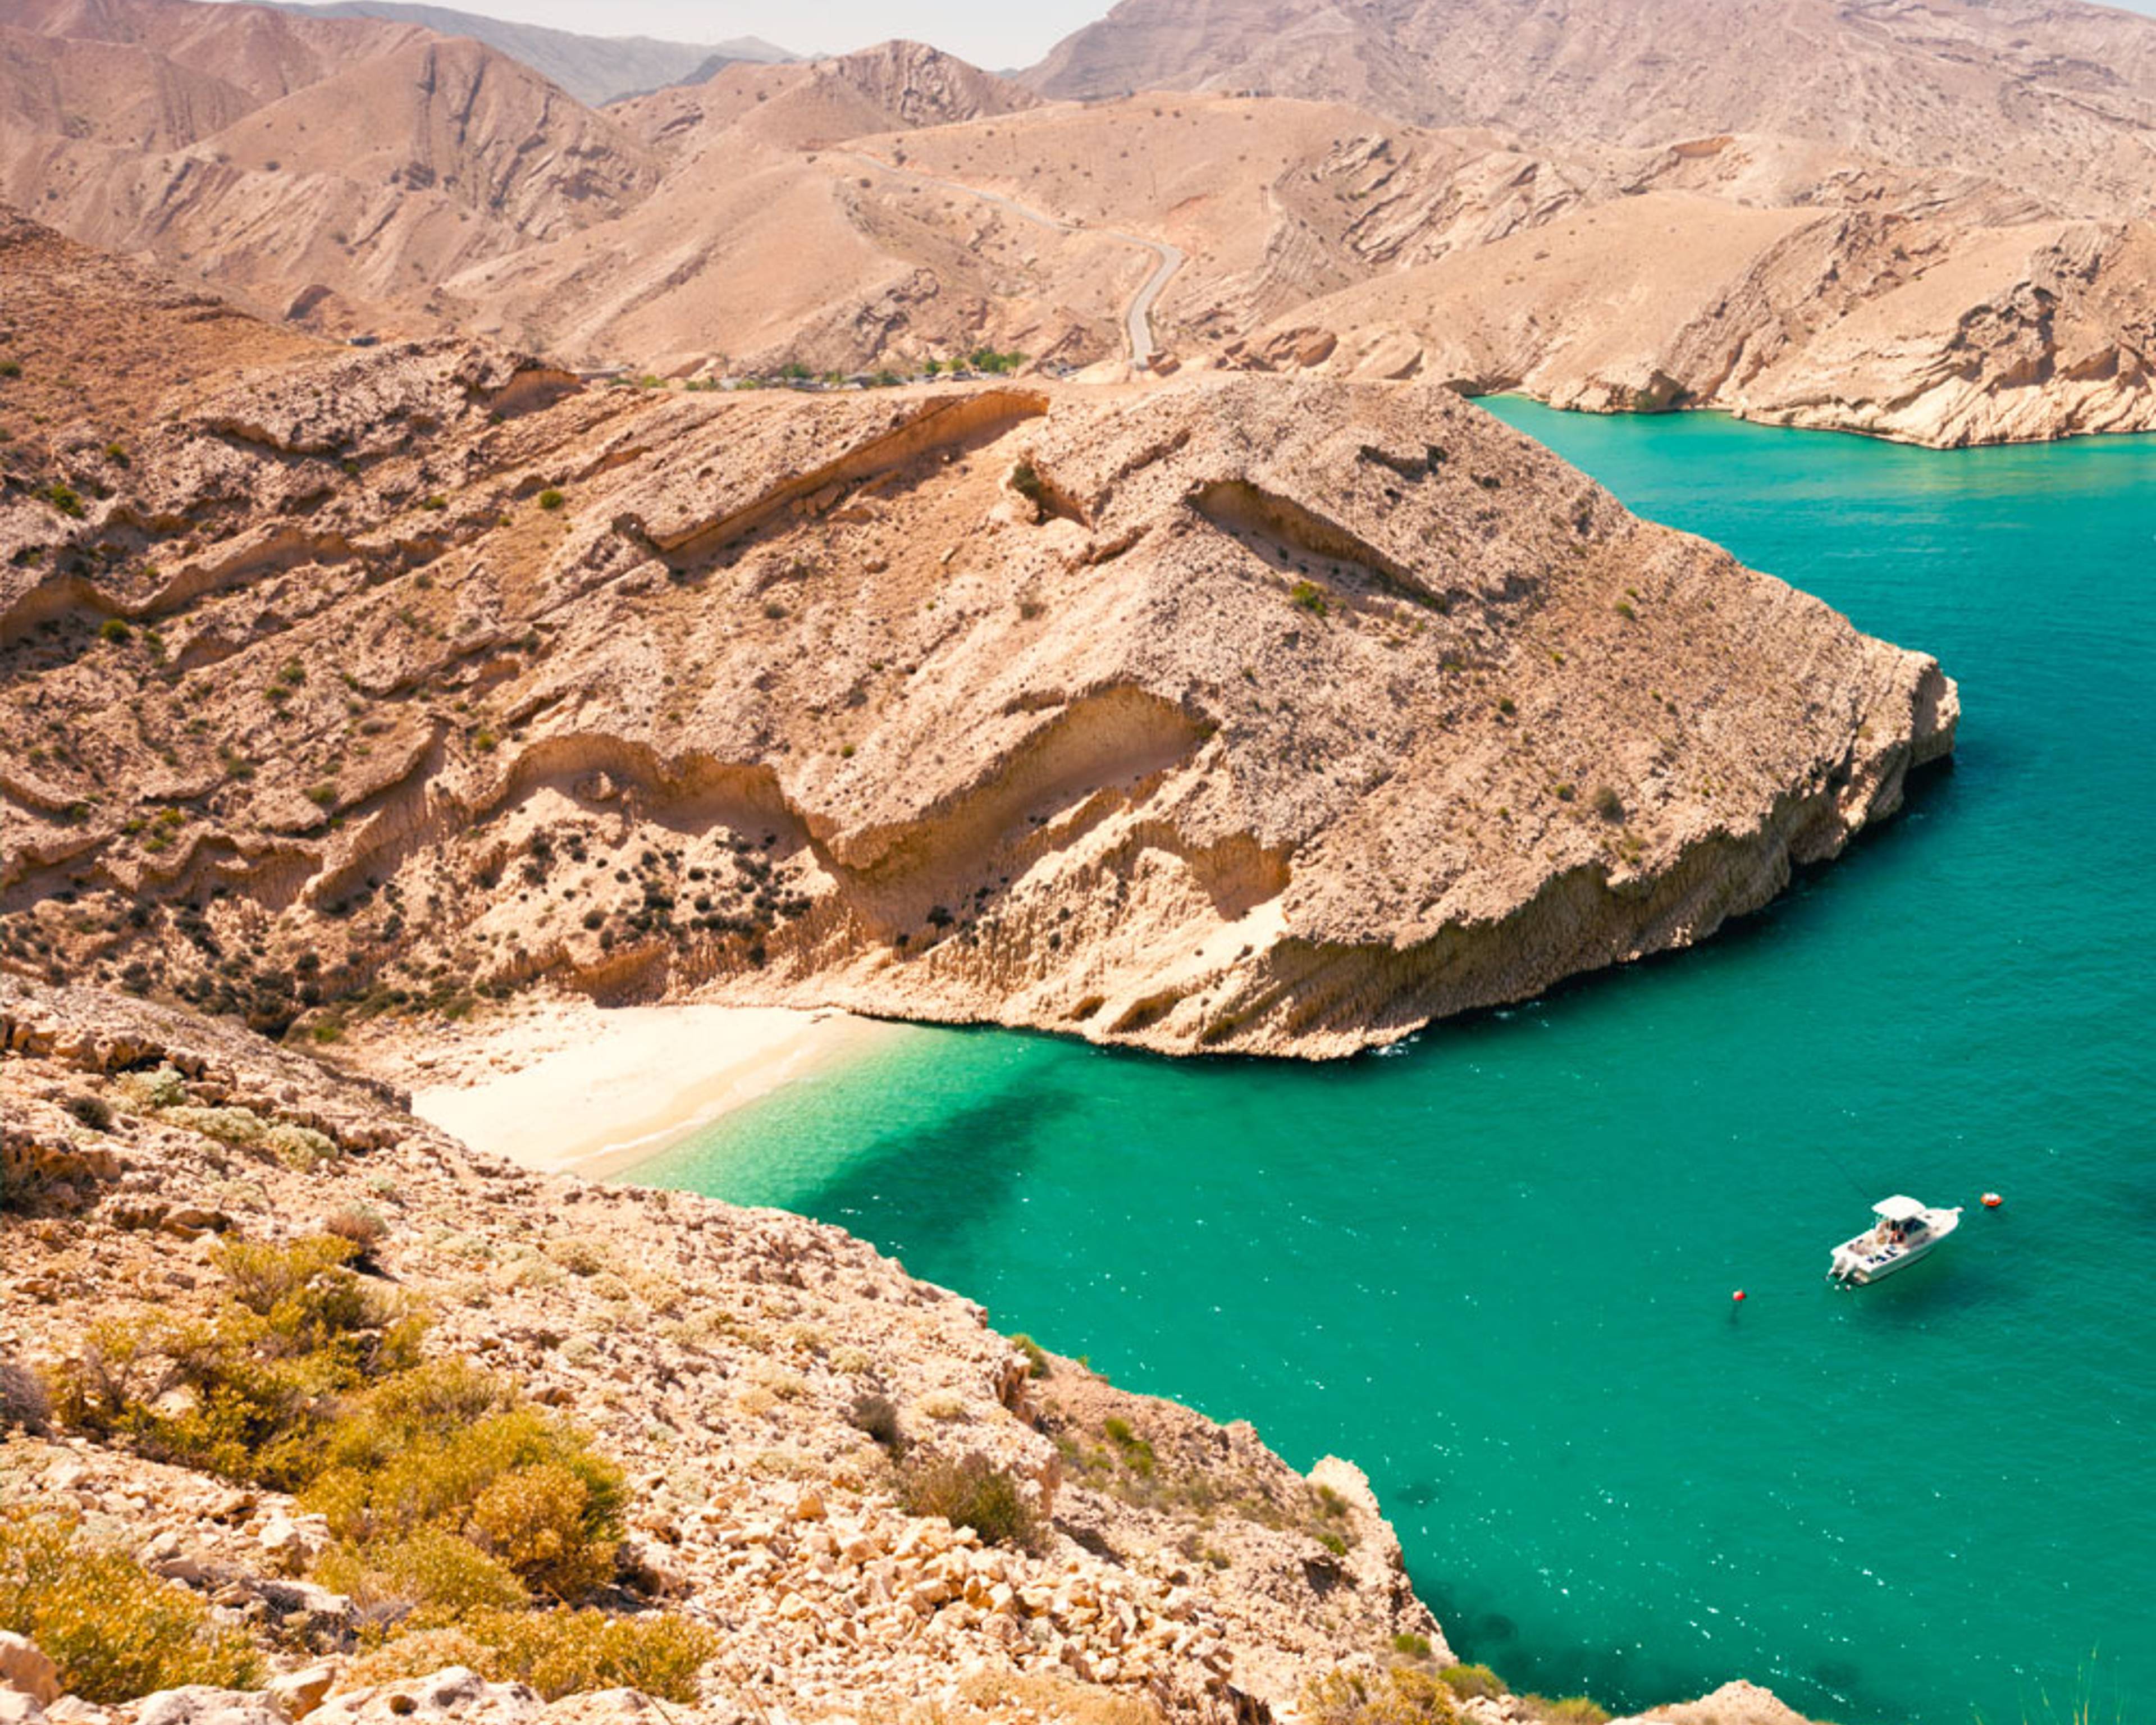 Découvrez les plus belles plages lors de votre voyage à Oman 100% sur mesure